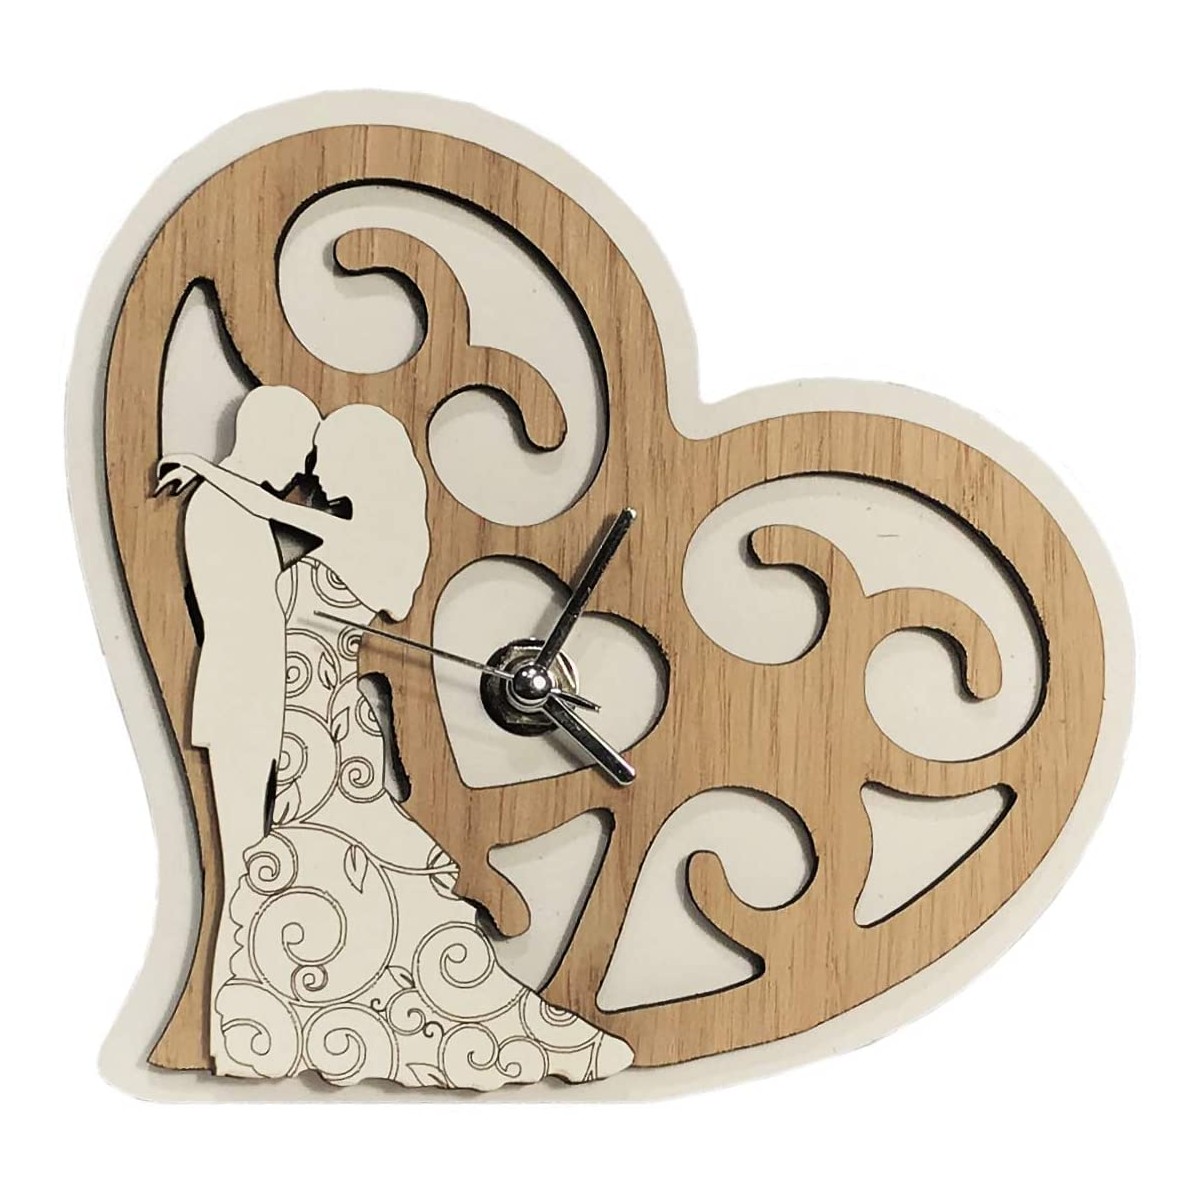 Bomboniera matrimonio orologio cuore in legno per matrimonio